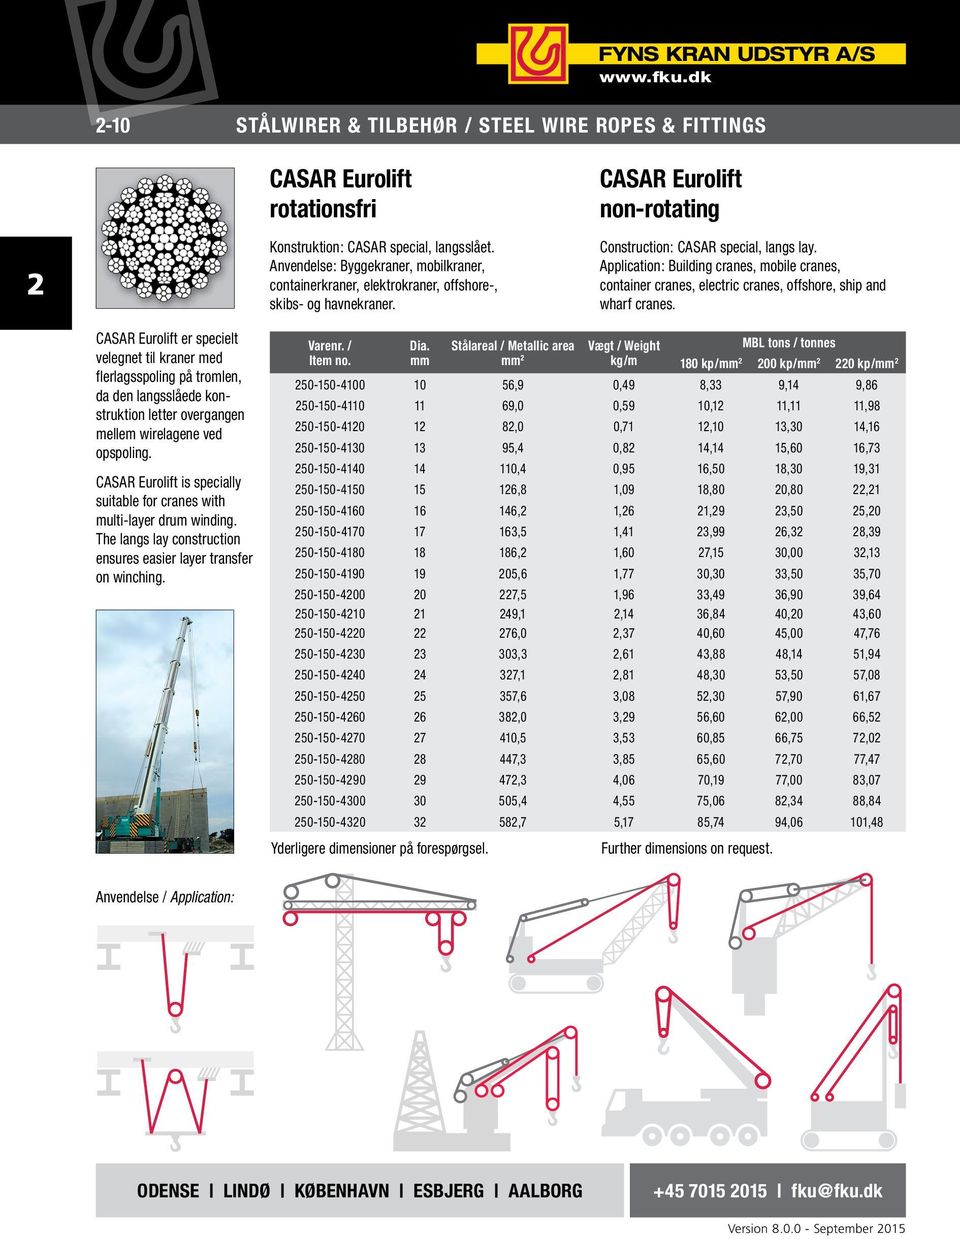 CASAR Eurolift er specielt velegnet til kraner med flerlags spoling på tromlen, da den langsslåede konstruktion letter over gangen mellem wirelagene ved opspoling.